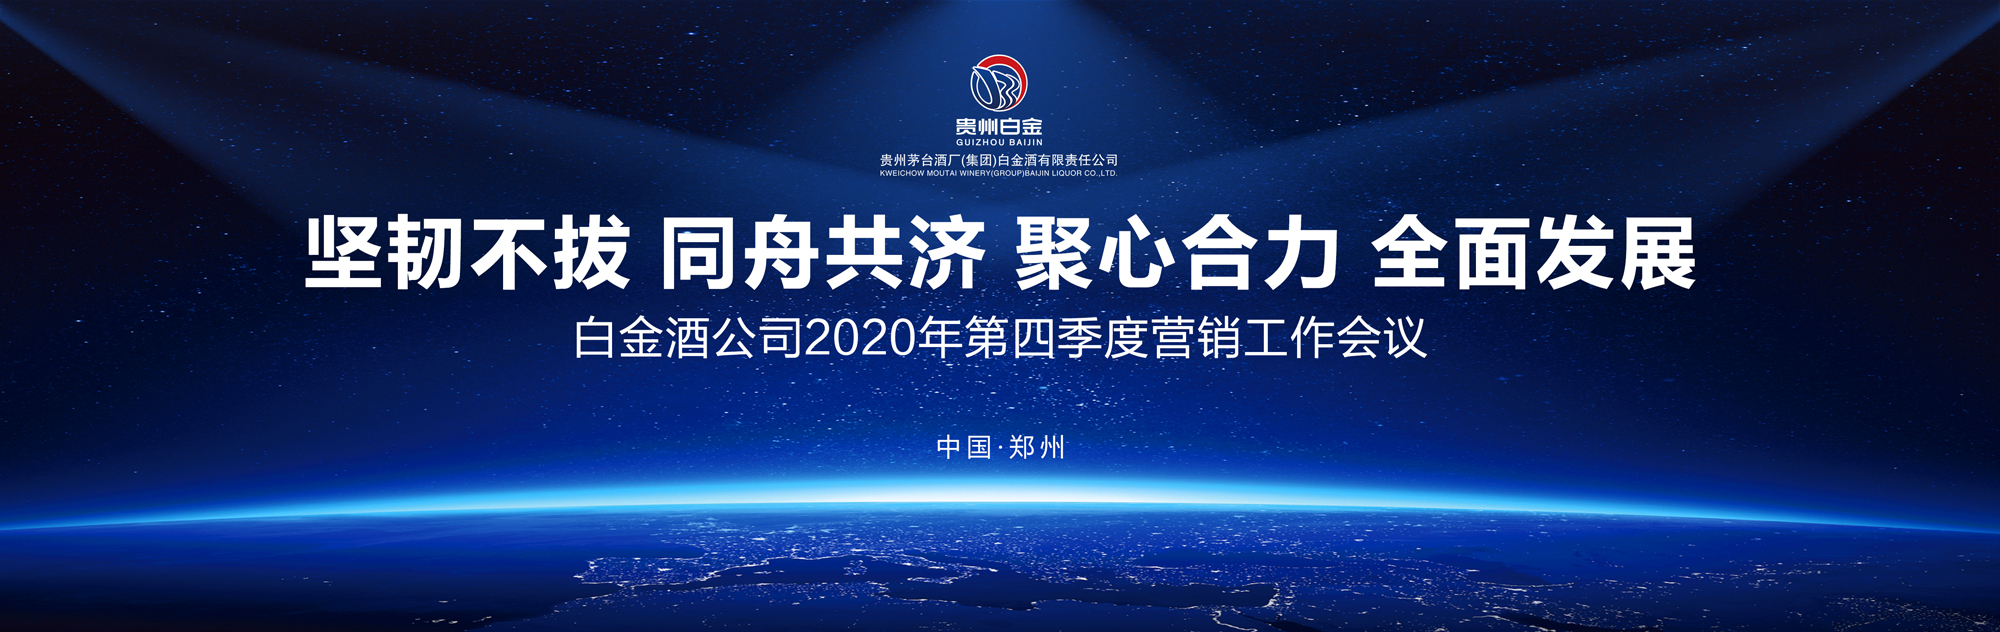 坚韧不拔 同舟共济 聚心合力 全面发展 白金酒公司2020年第四季度营销工作会议在郑州举行